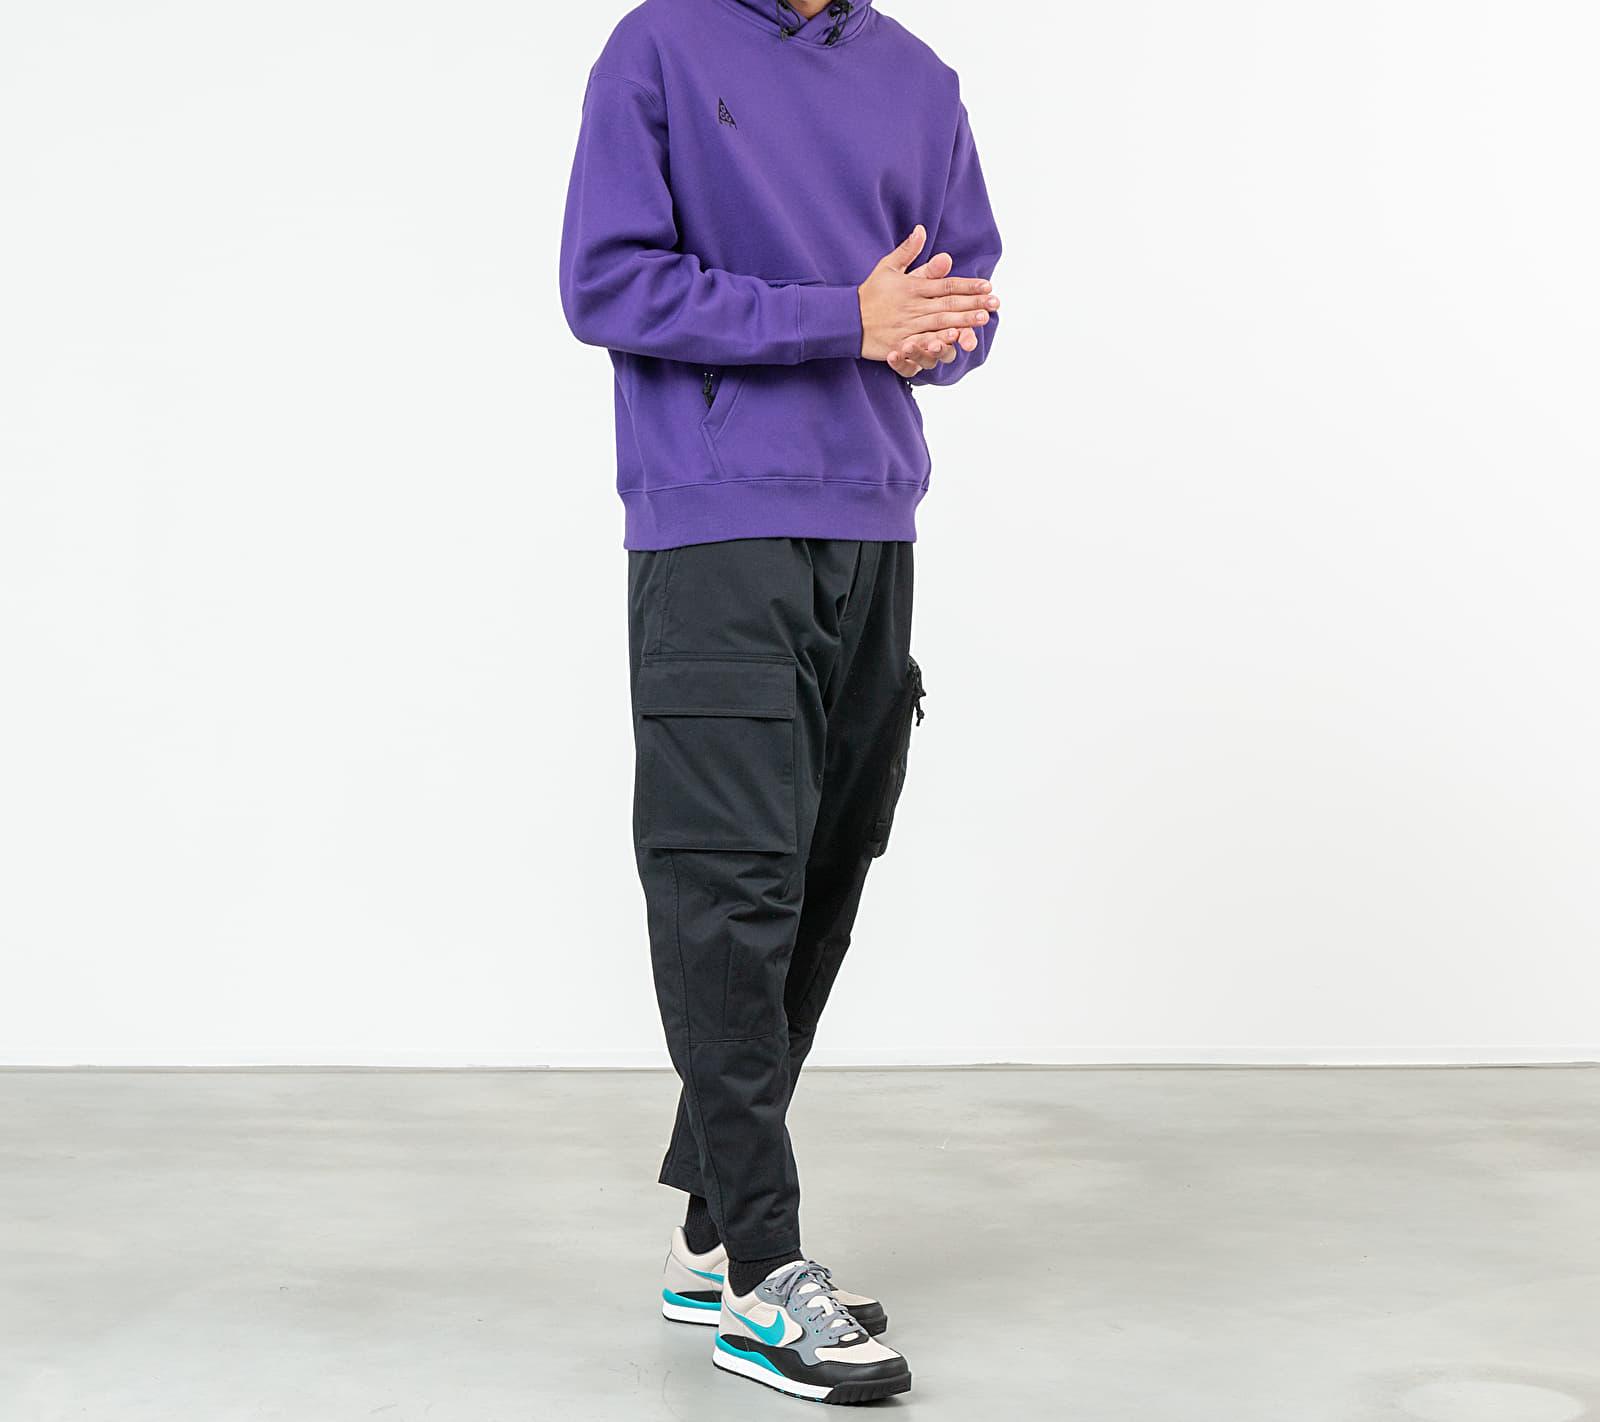 ince kabul etmek kasap nike acg hoodie purple diğer yüzük Avustralya